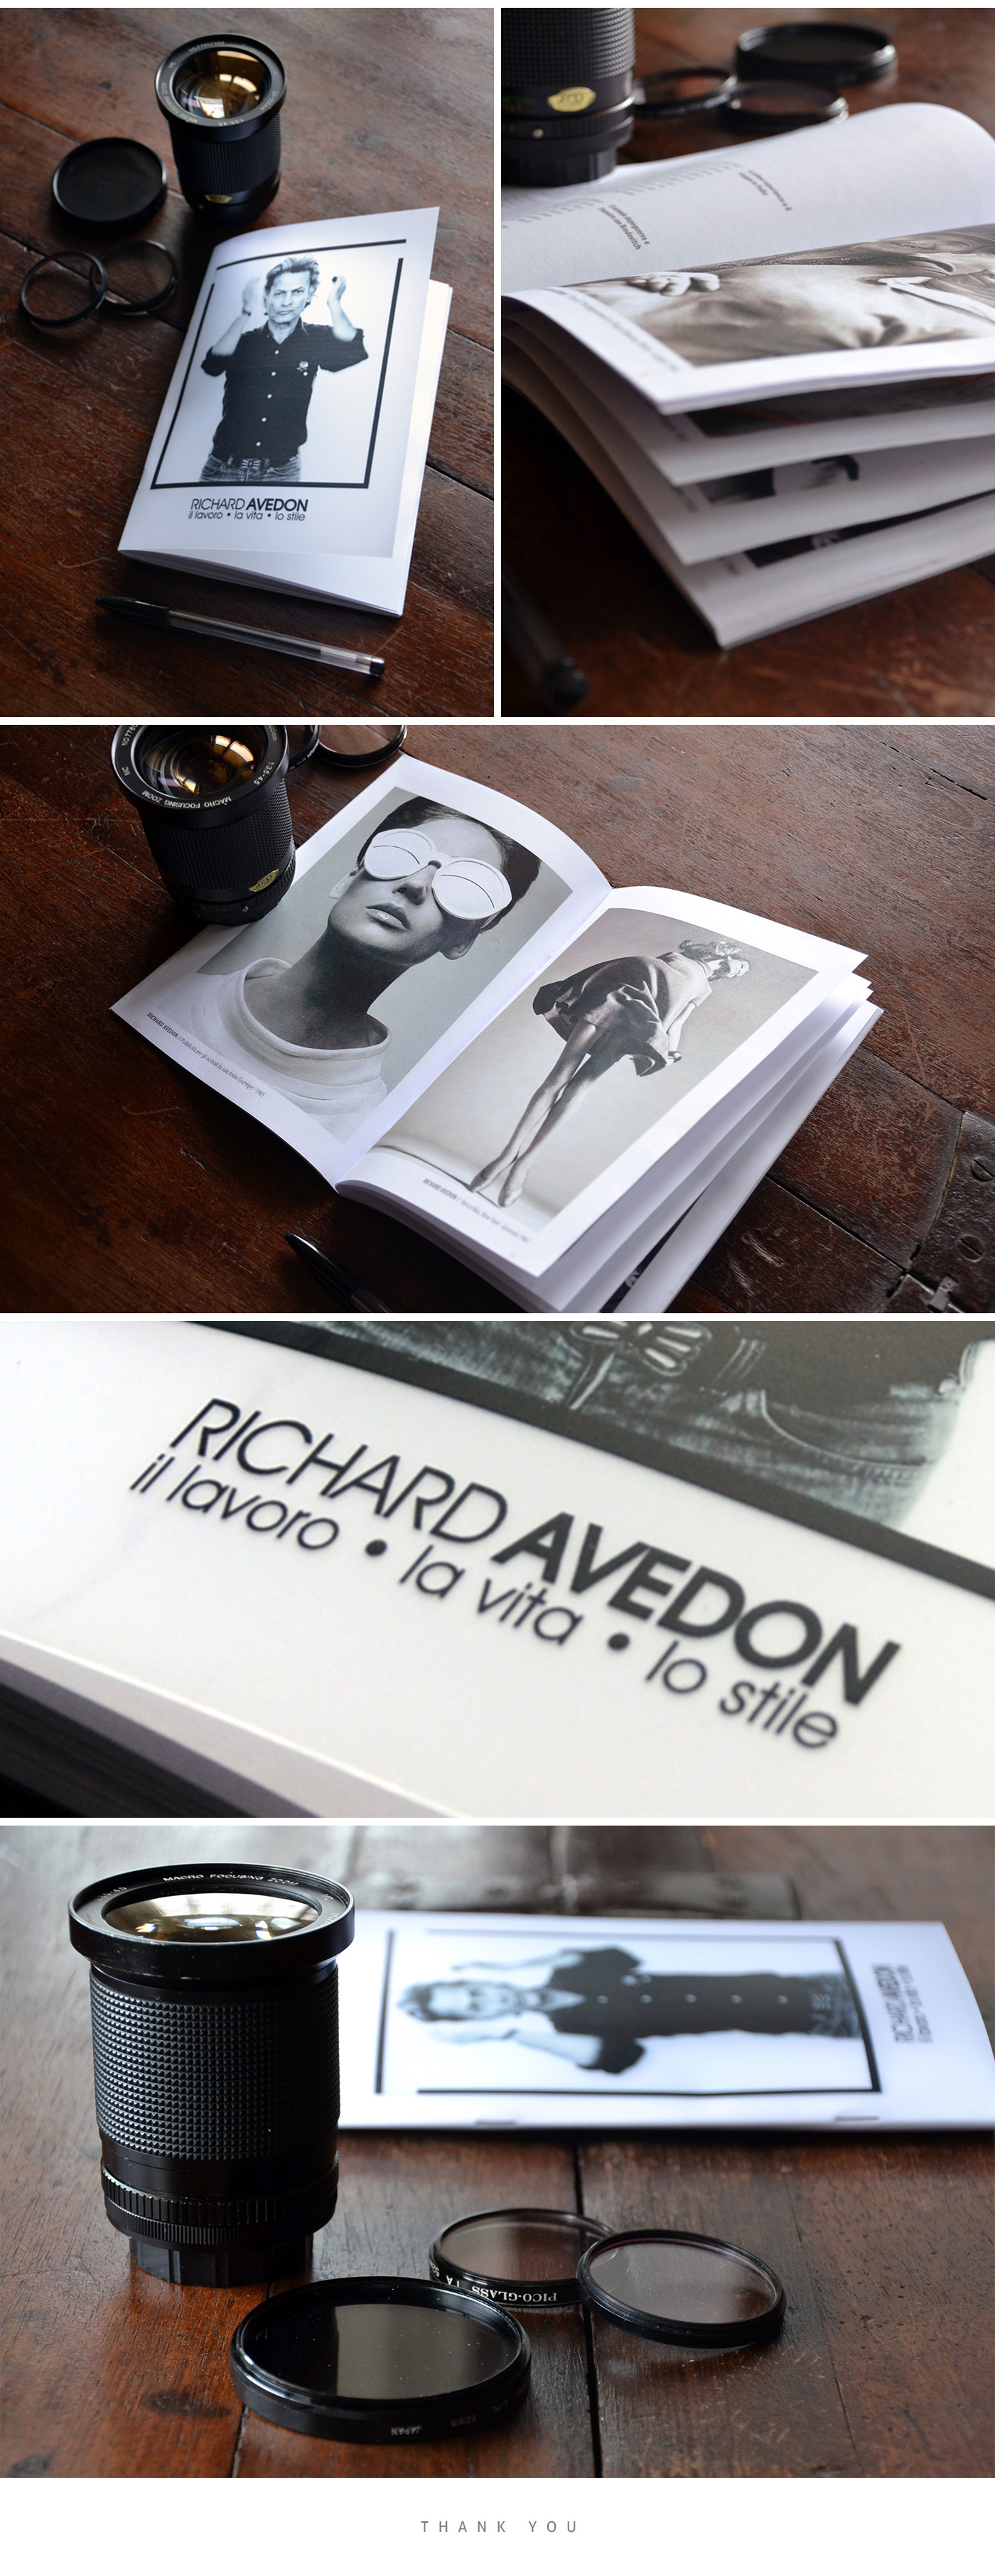 photographer richard Avedon thesis portait moda black White Booklet art editorial print photo luxury